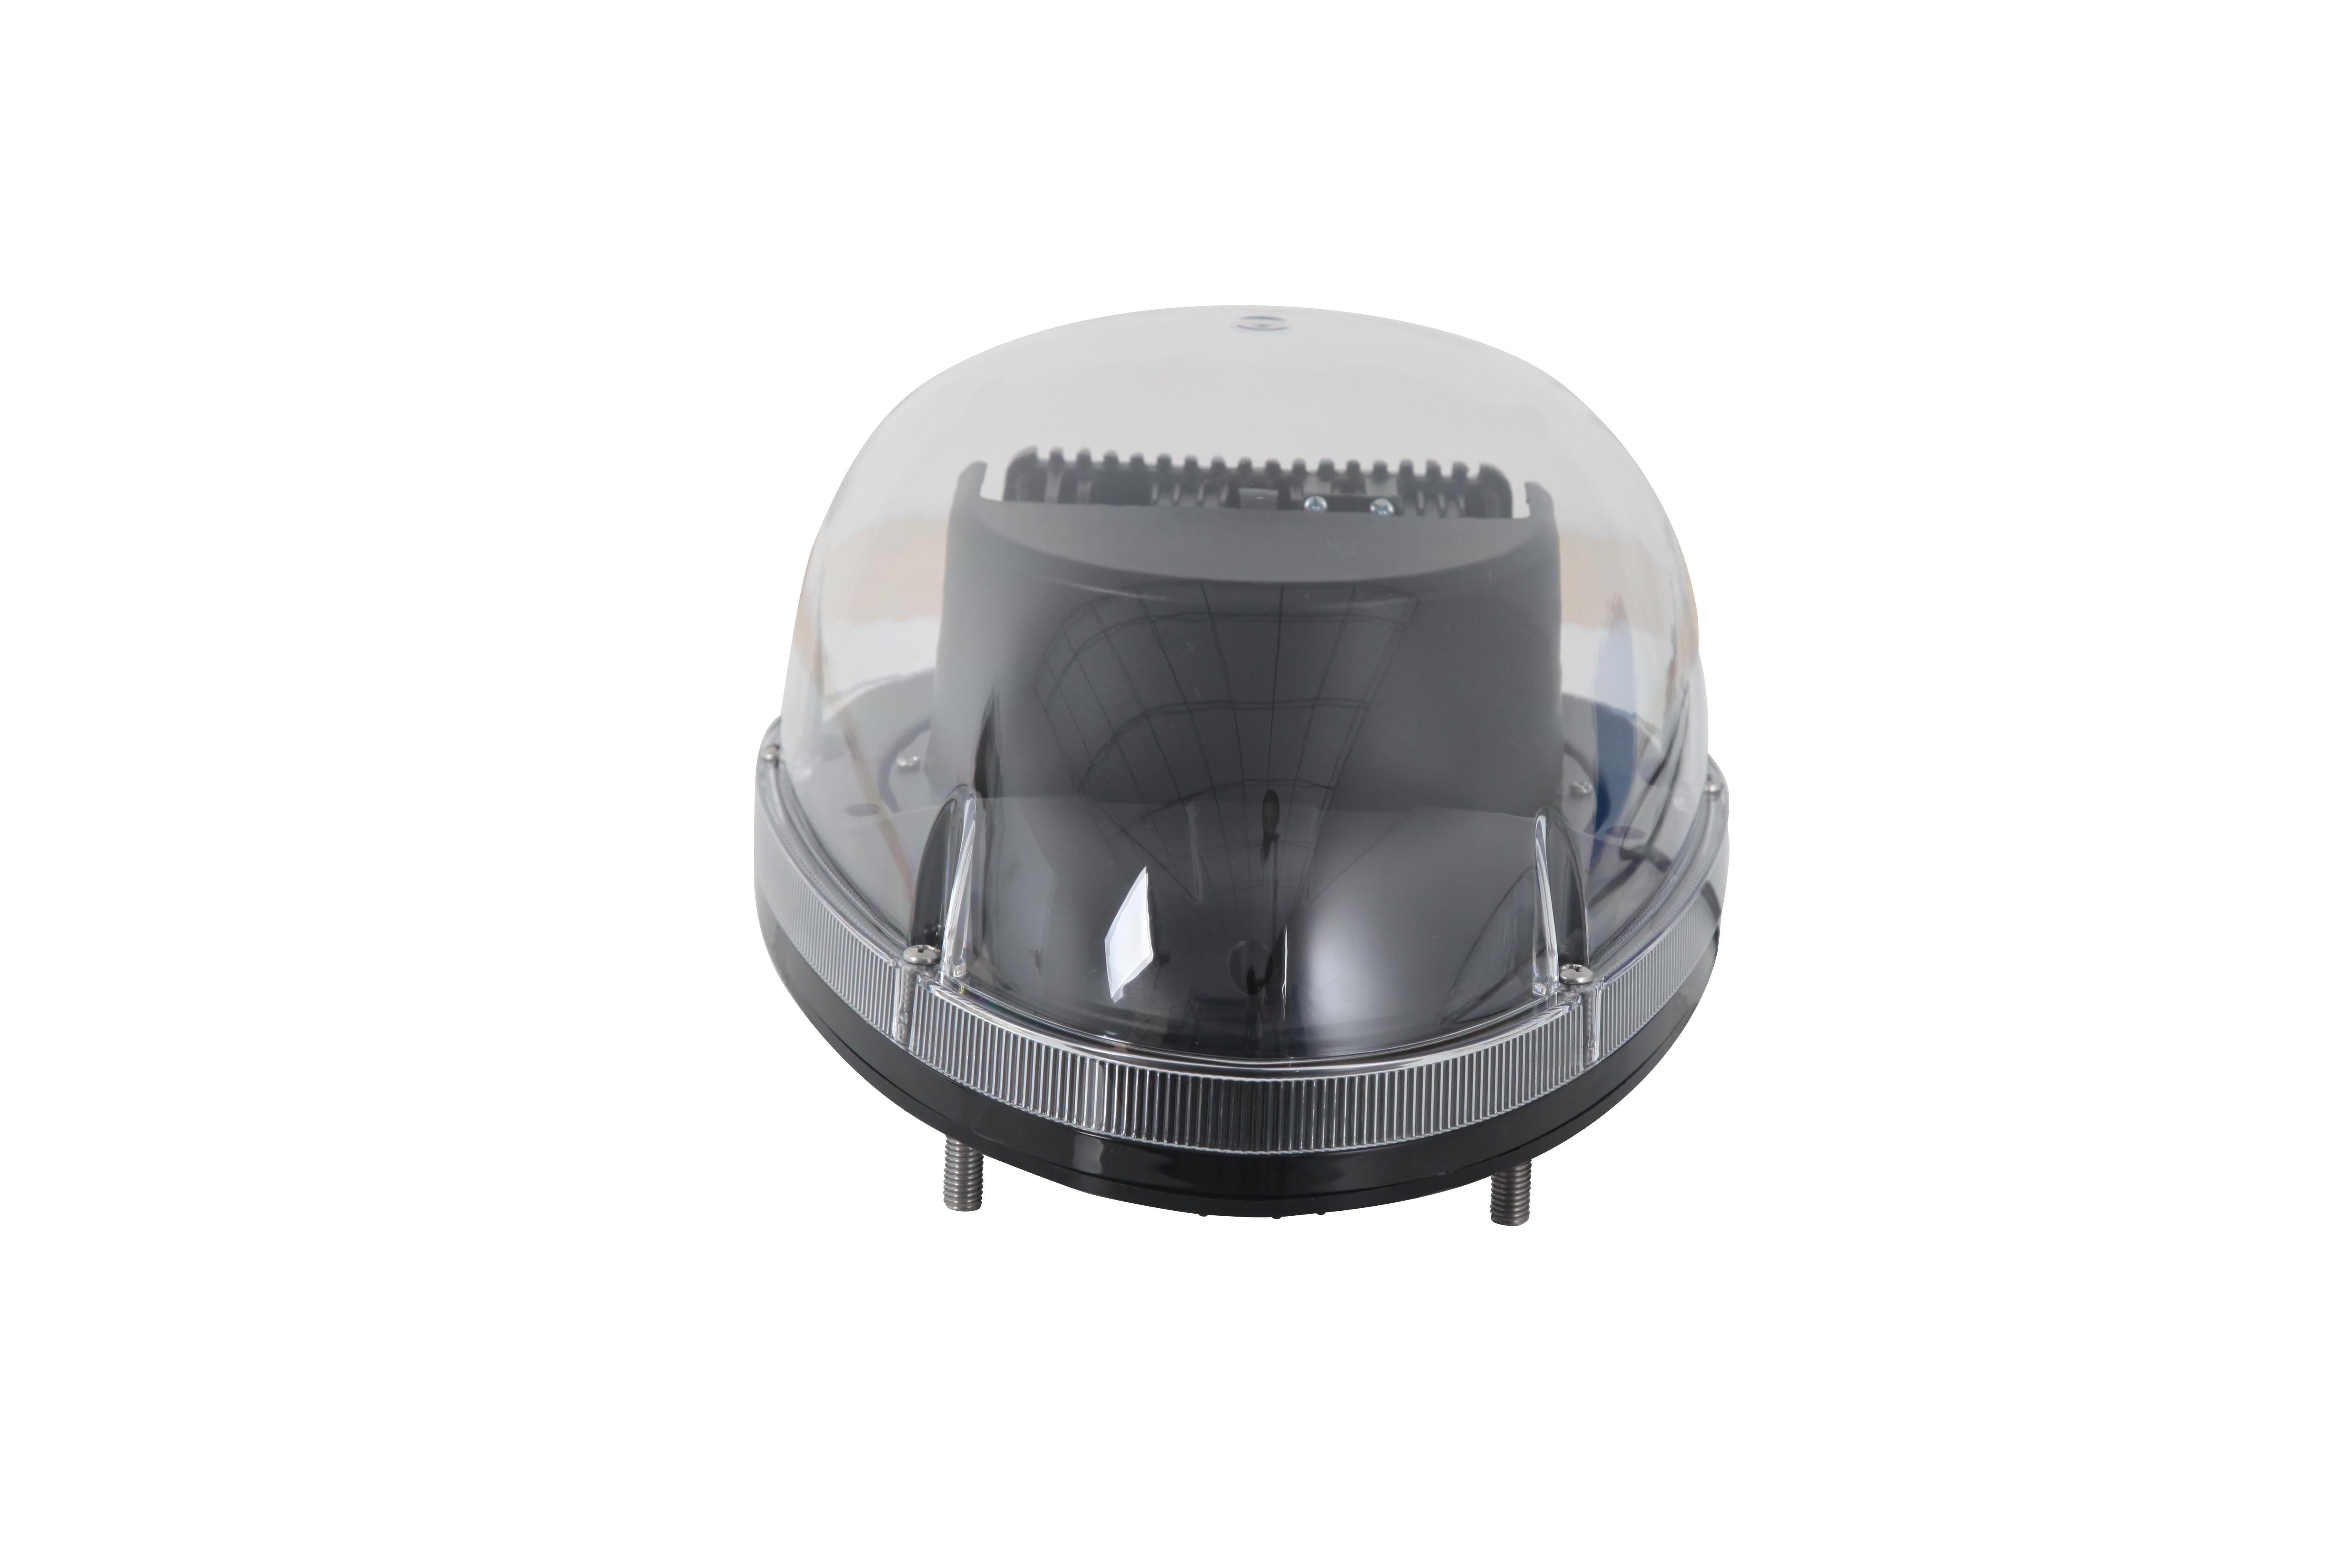 Suparee LED Suchscheinwerfer Arbeitsleuchte Funkfernsteuerbar mit Magnetfuß  Suchlicht - Wetterfest 360 Grad Drehbar für Auto Offroad Jagd Boot Garden